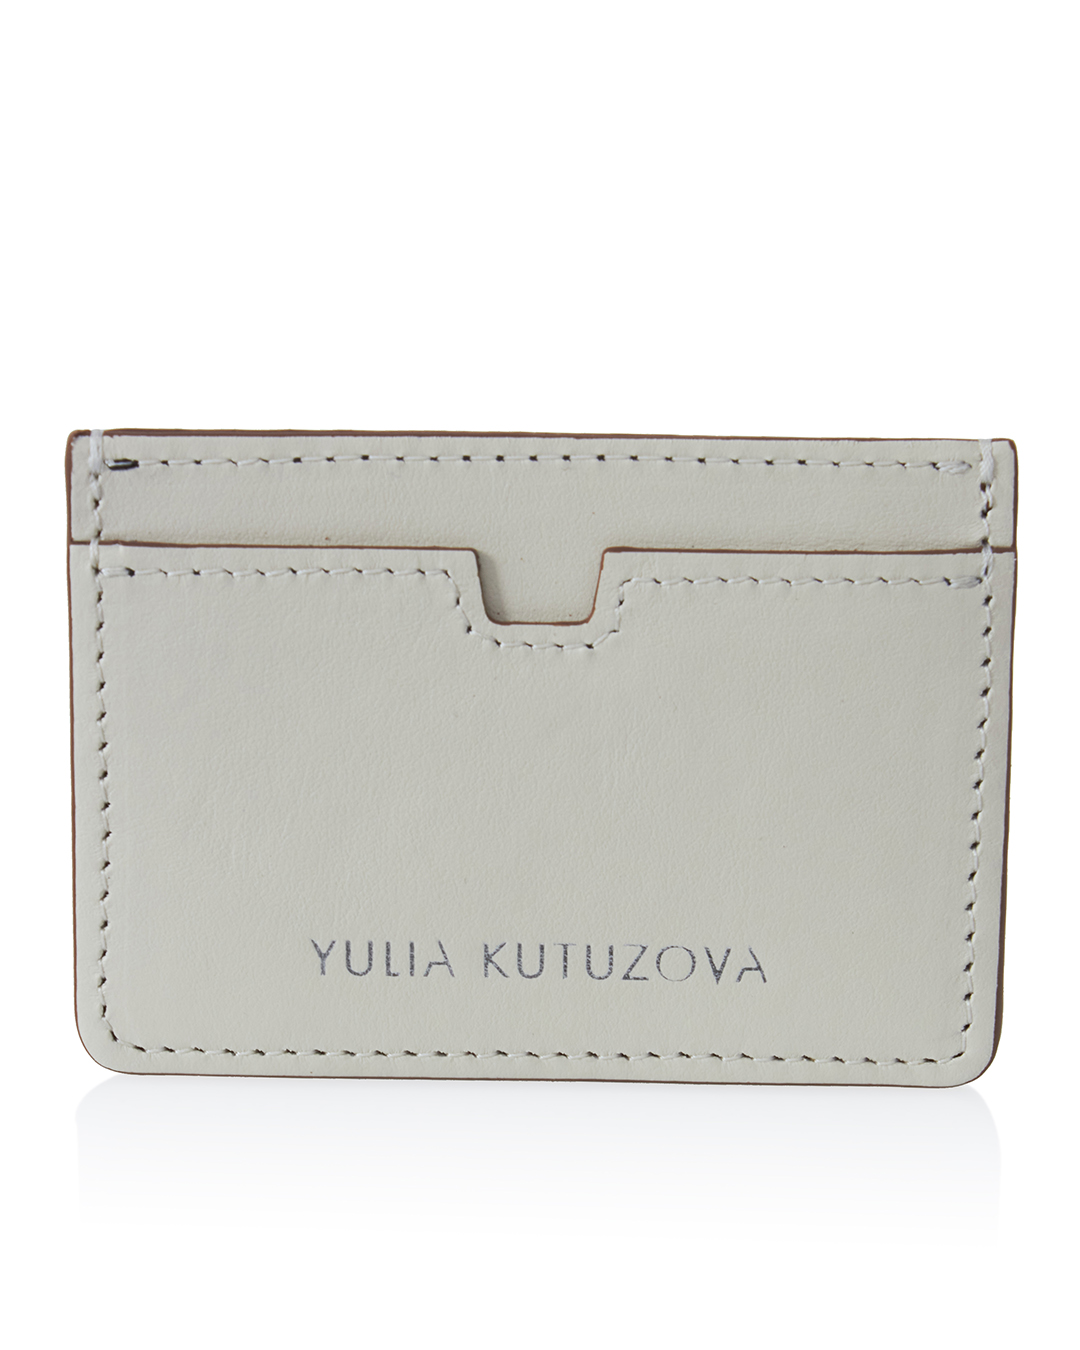 YULIA KUTUZOVA  артикул KRDH01-0420 марки YULIA KUTUZOVA купить за 4600 руб.